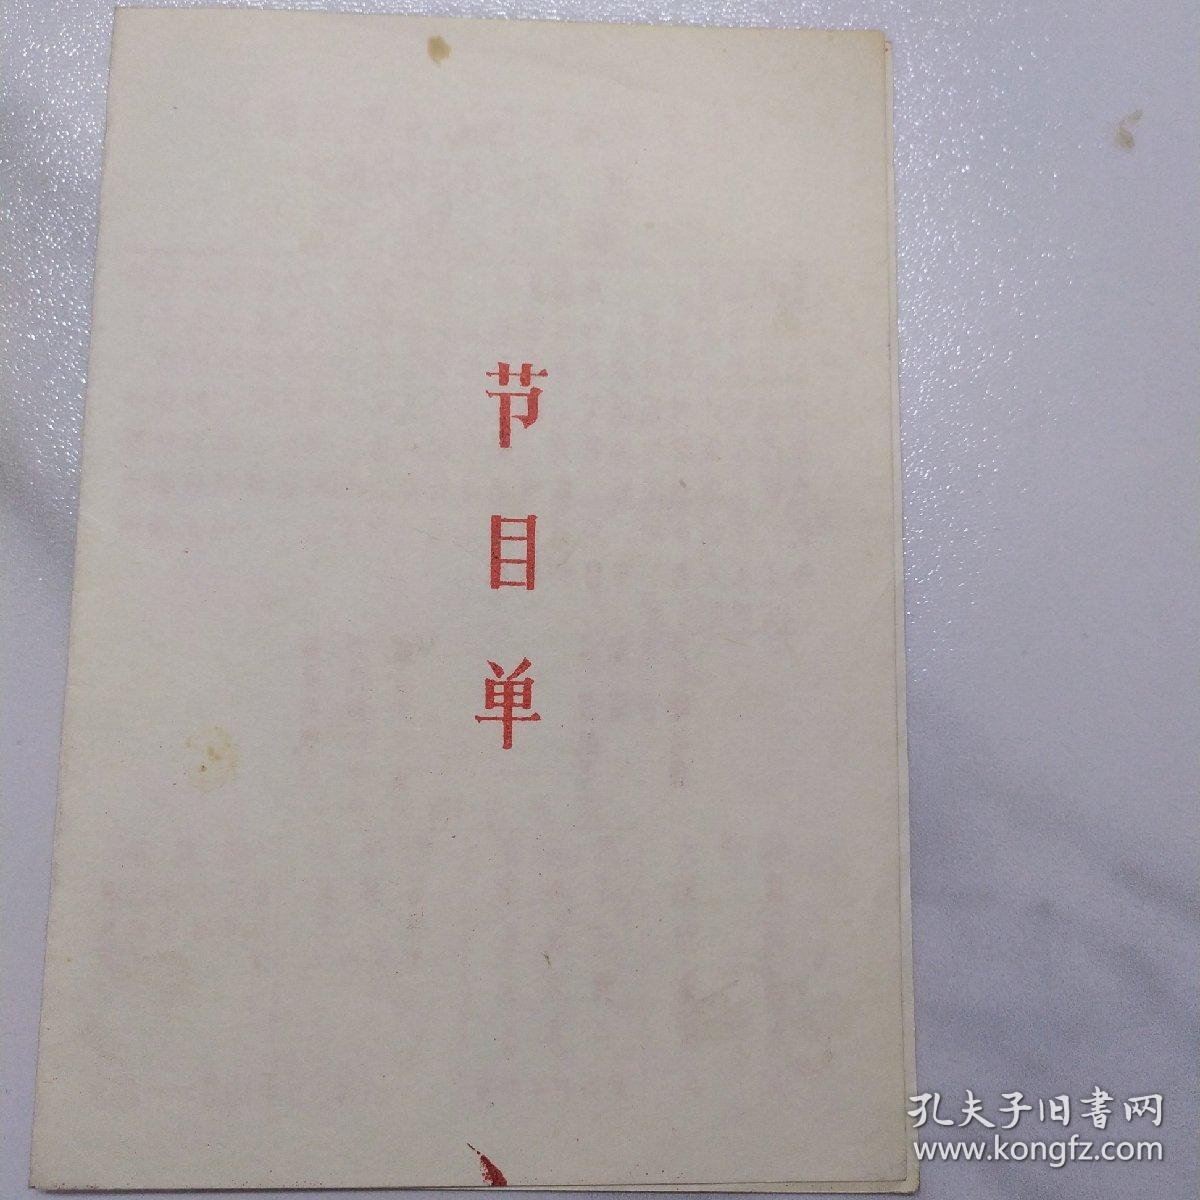 京剧节目单：1989年北京市海淀区万寿路京剧队演出（育英中学助演）《霸王别姬》《定军山》